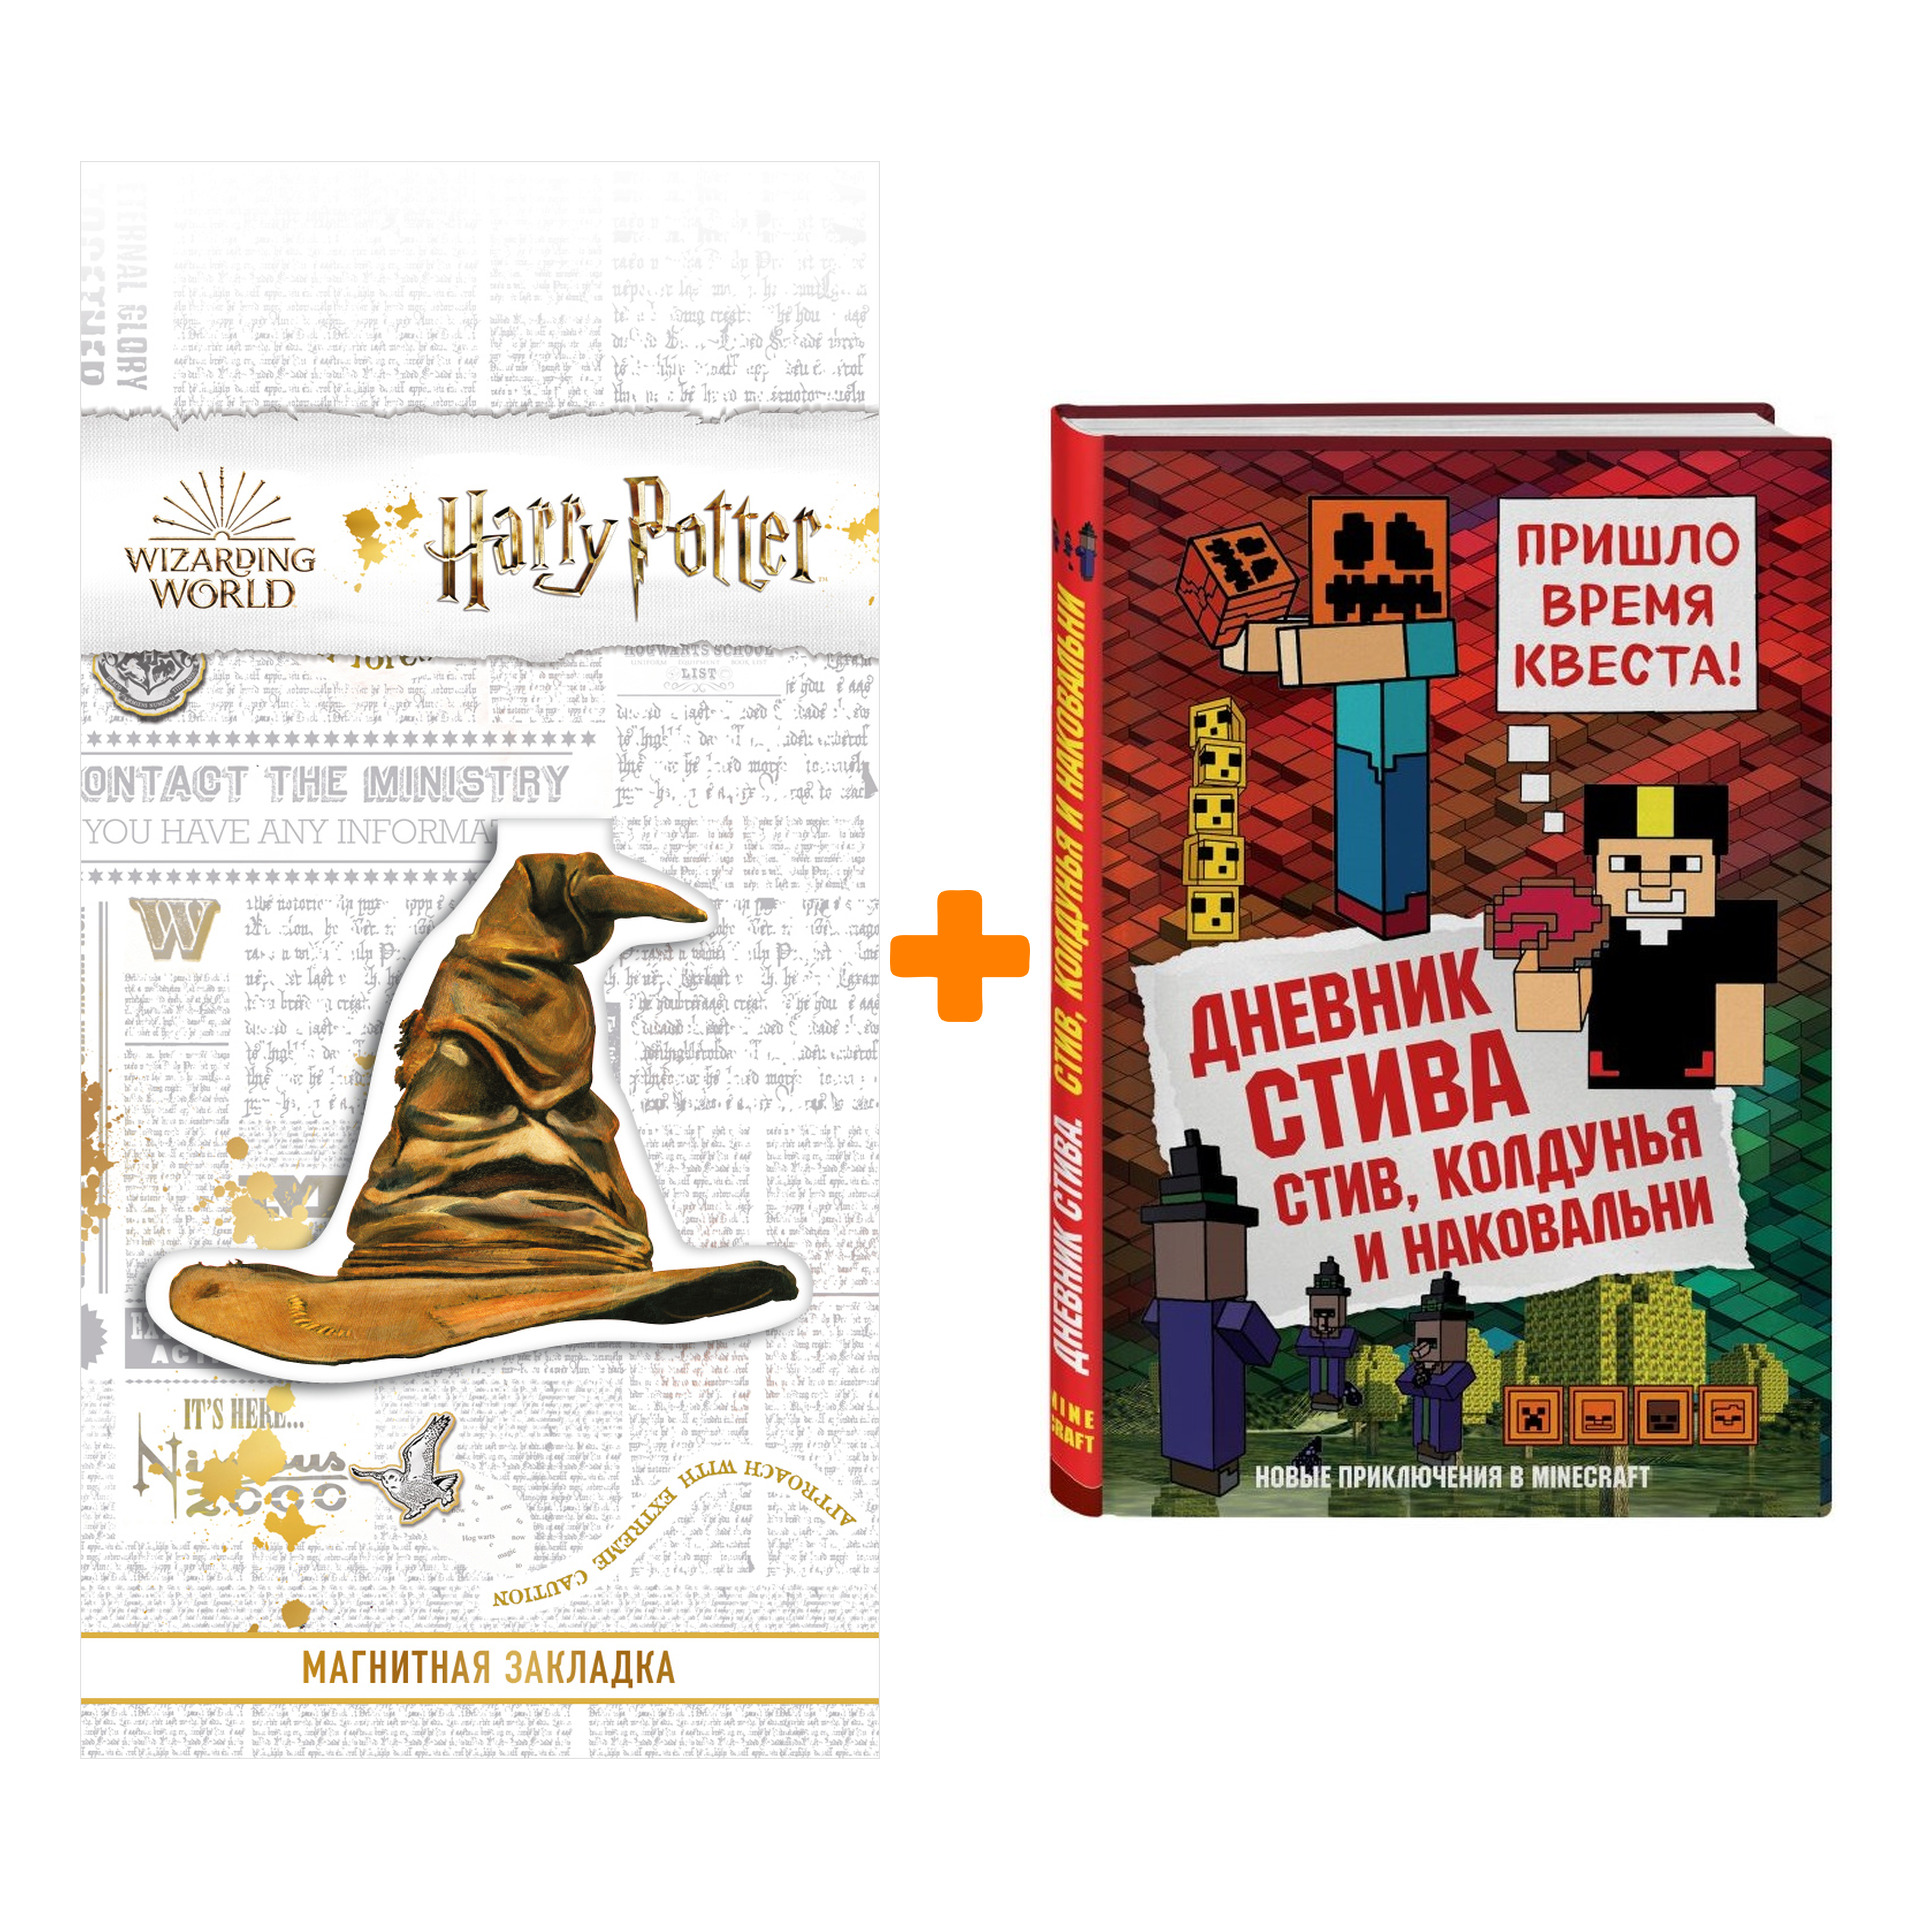 Набор Дневник Стива Книга 7 Стив, колдунья и наковальни + Закладка Harry Potter Распределяющая шляпа магнитная